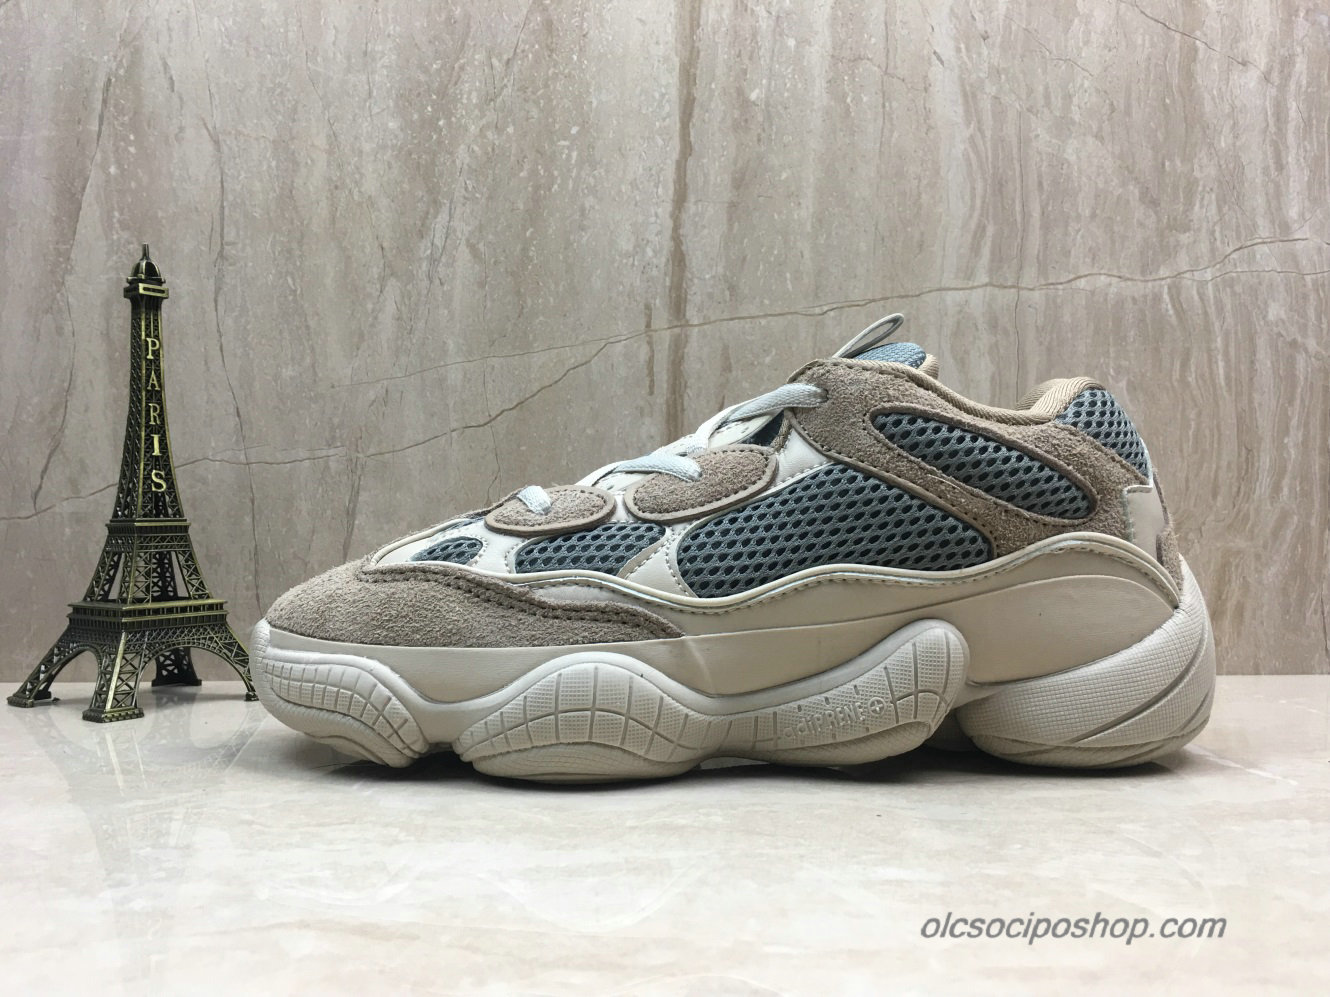 Adidas Yeezy Desert Rat 500 Blush Sötétszürke/Piszkosfehér Cipők (DB2998)